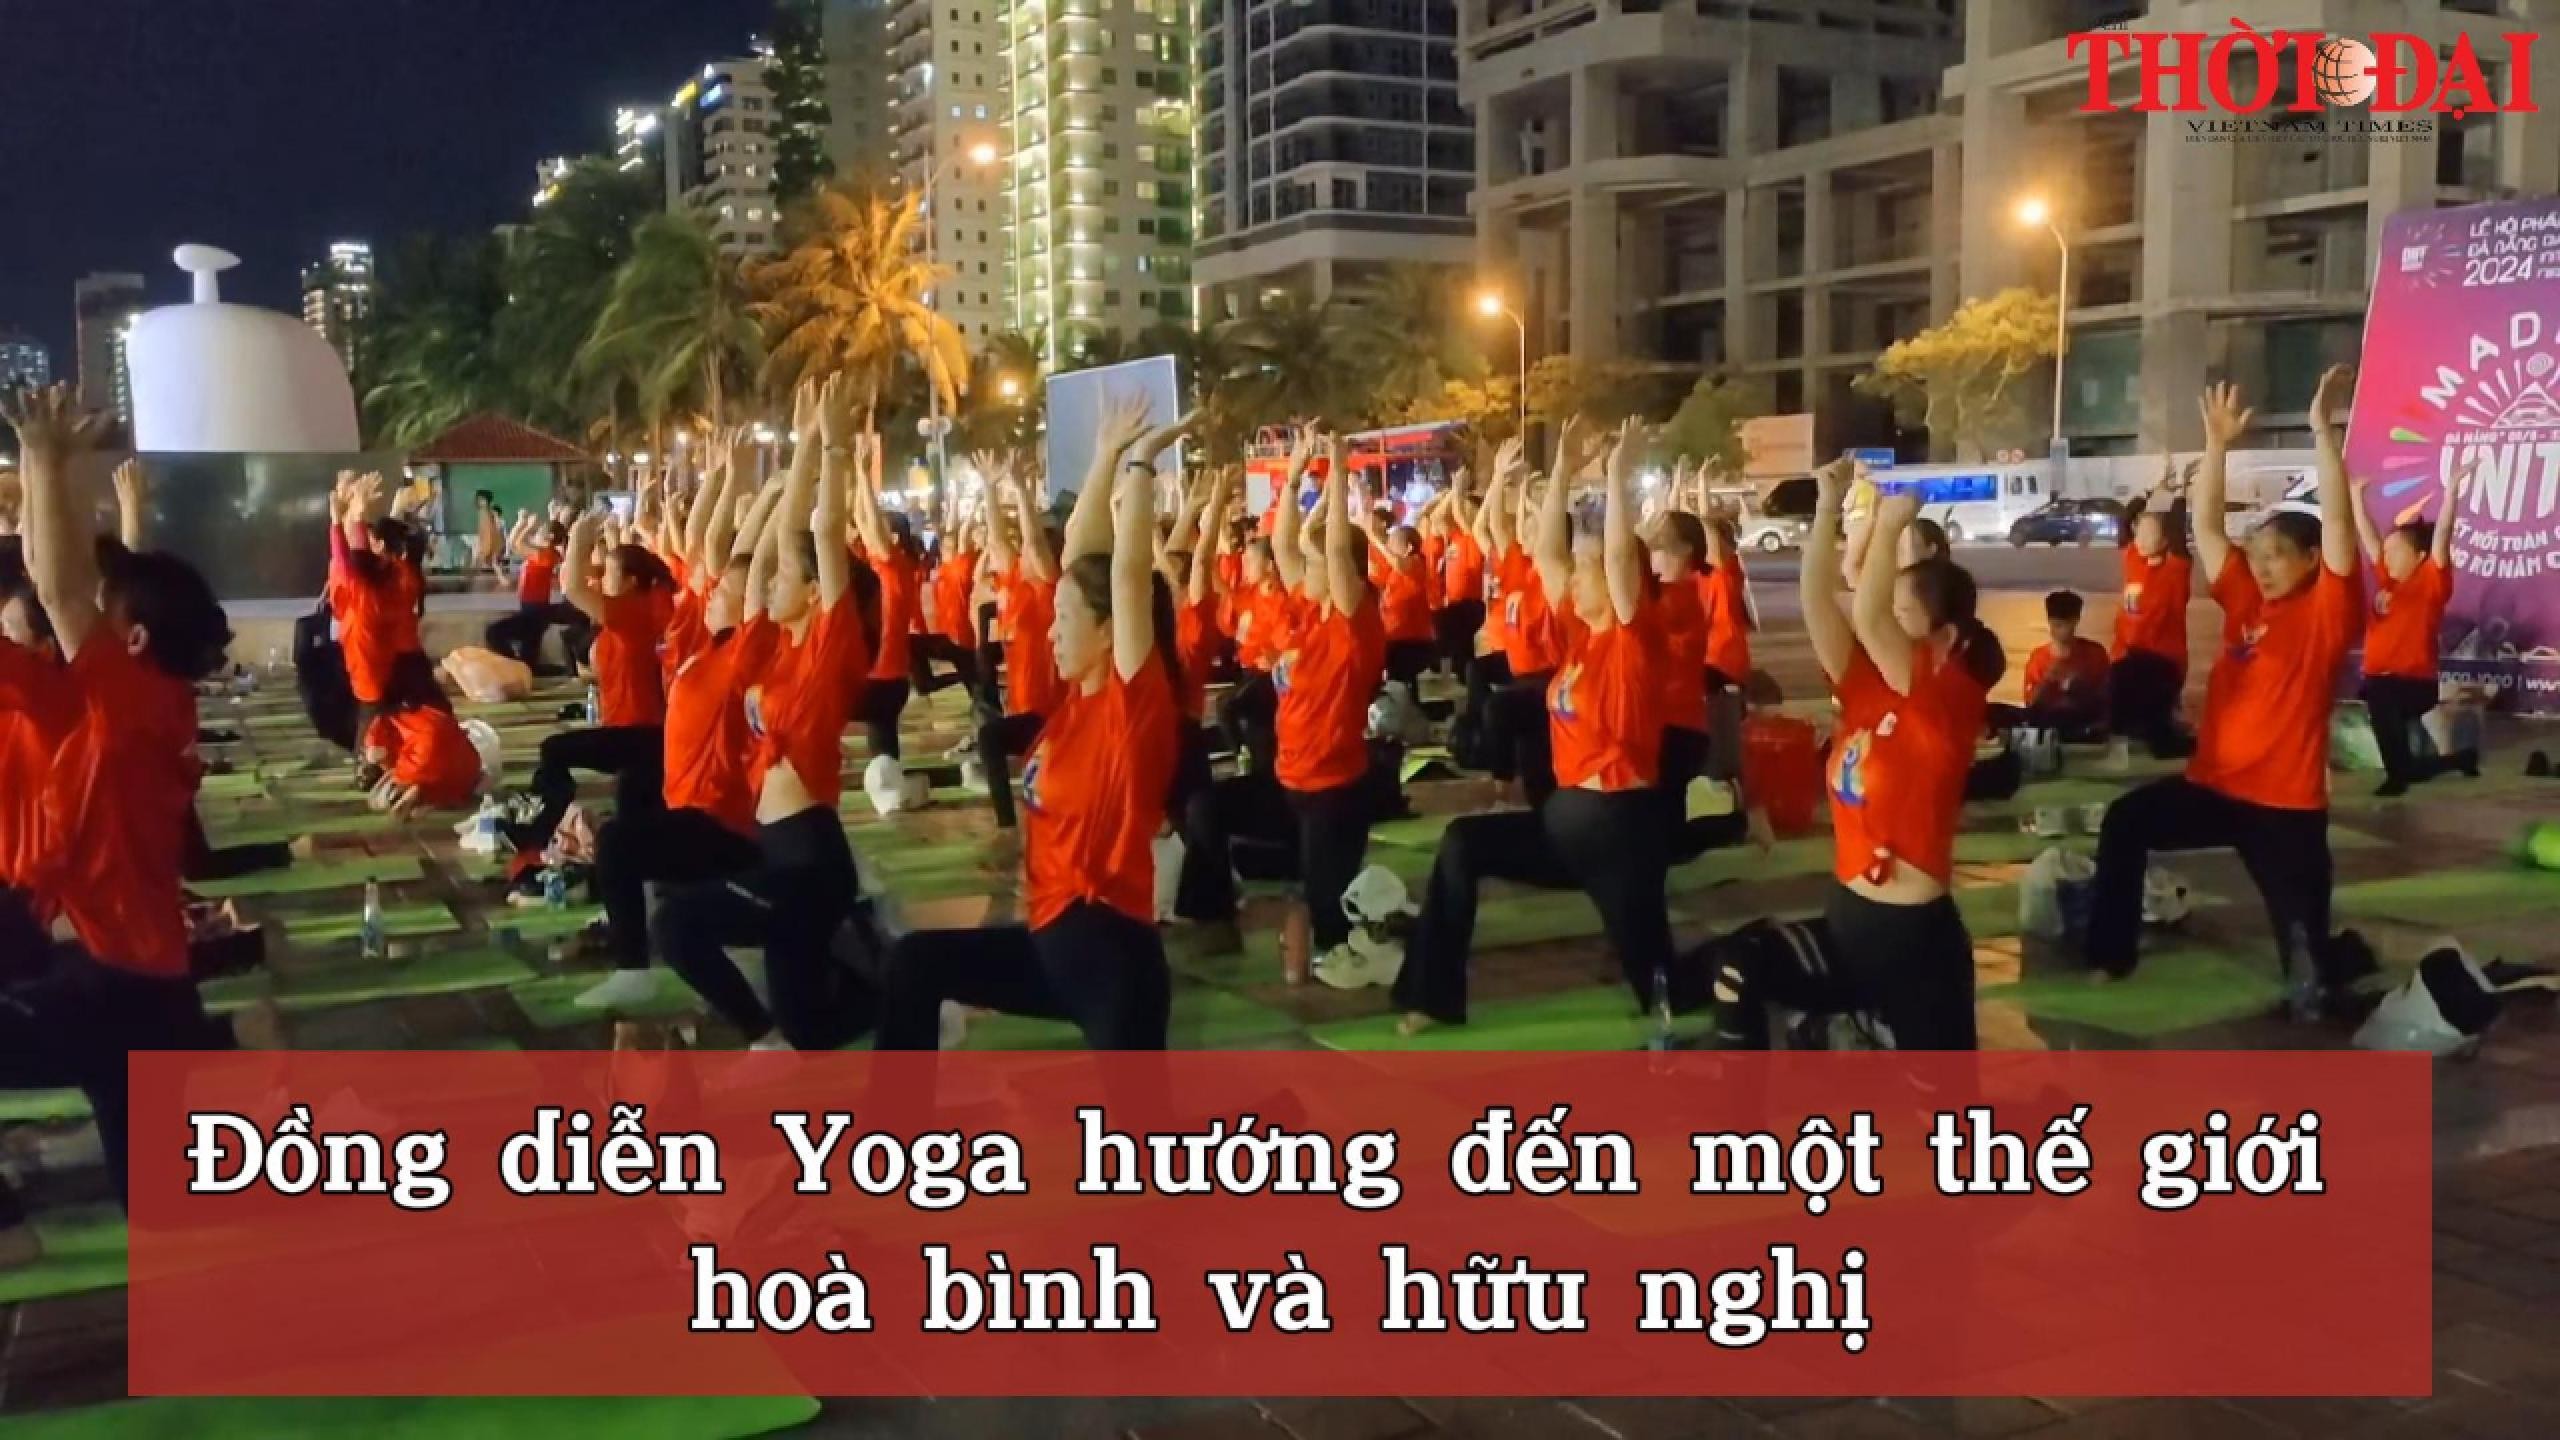 Đồng diễn Yoga hướng đến một thế giới hoà bình và hữu nghị